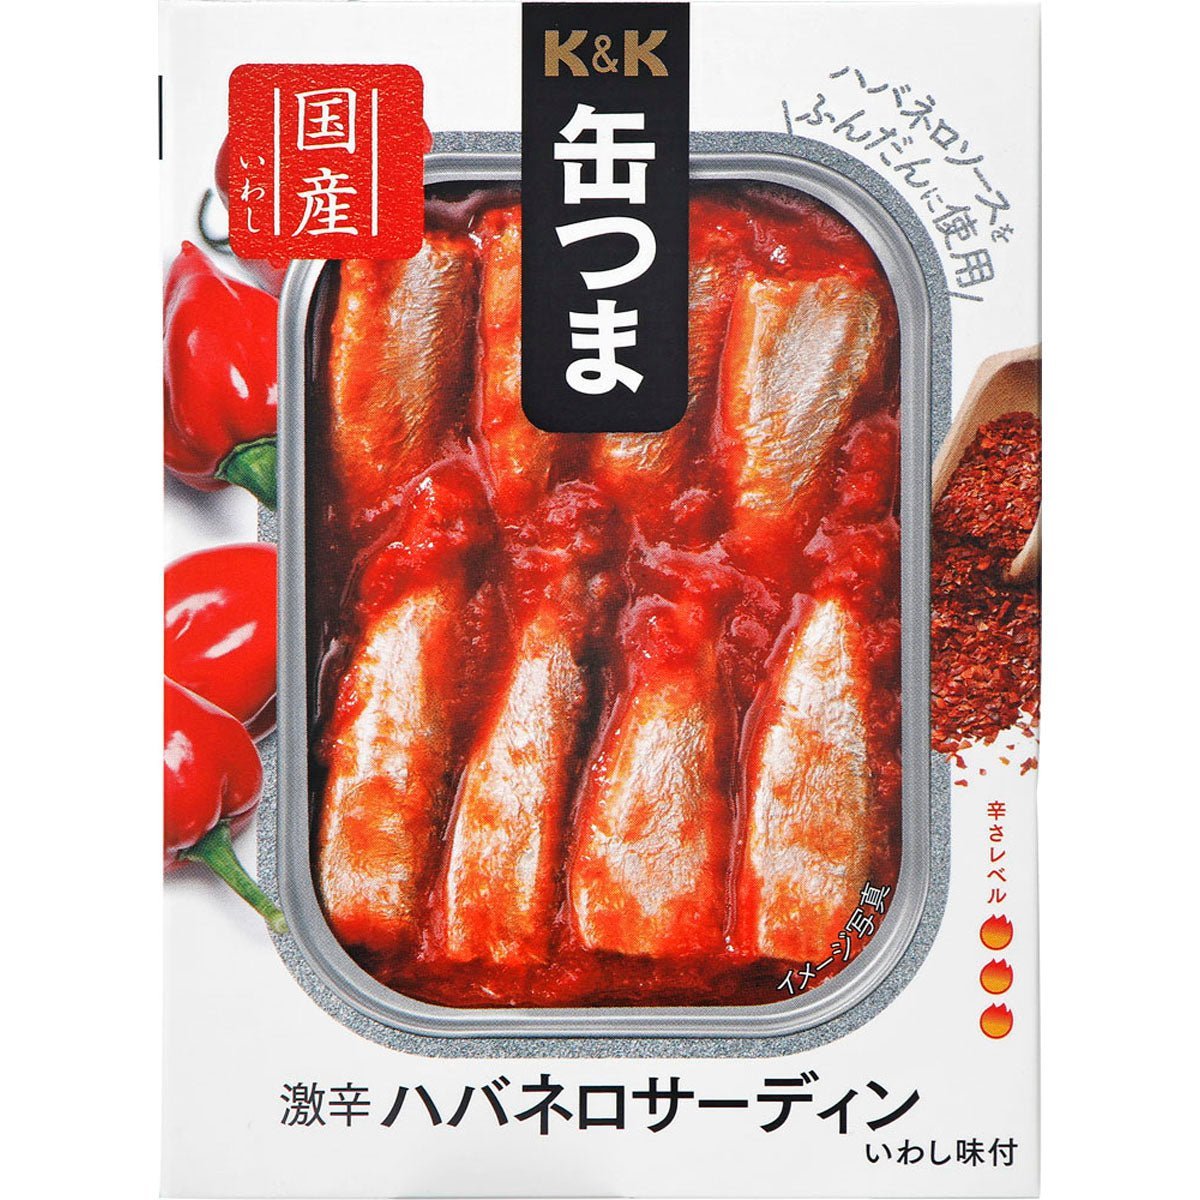 【セール品】K&K 缶つま 激辛ハバネロサーディン - ROJI日本橋 ONLINE STORE